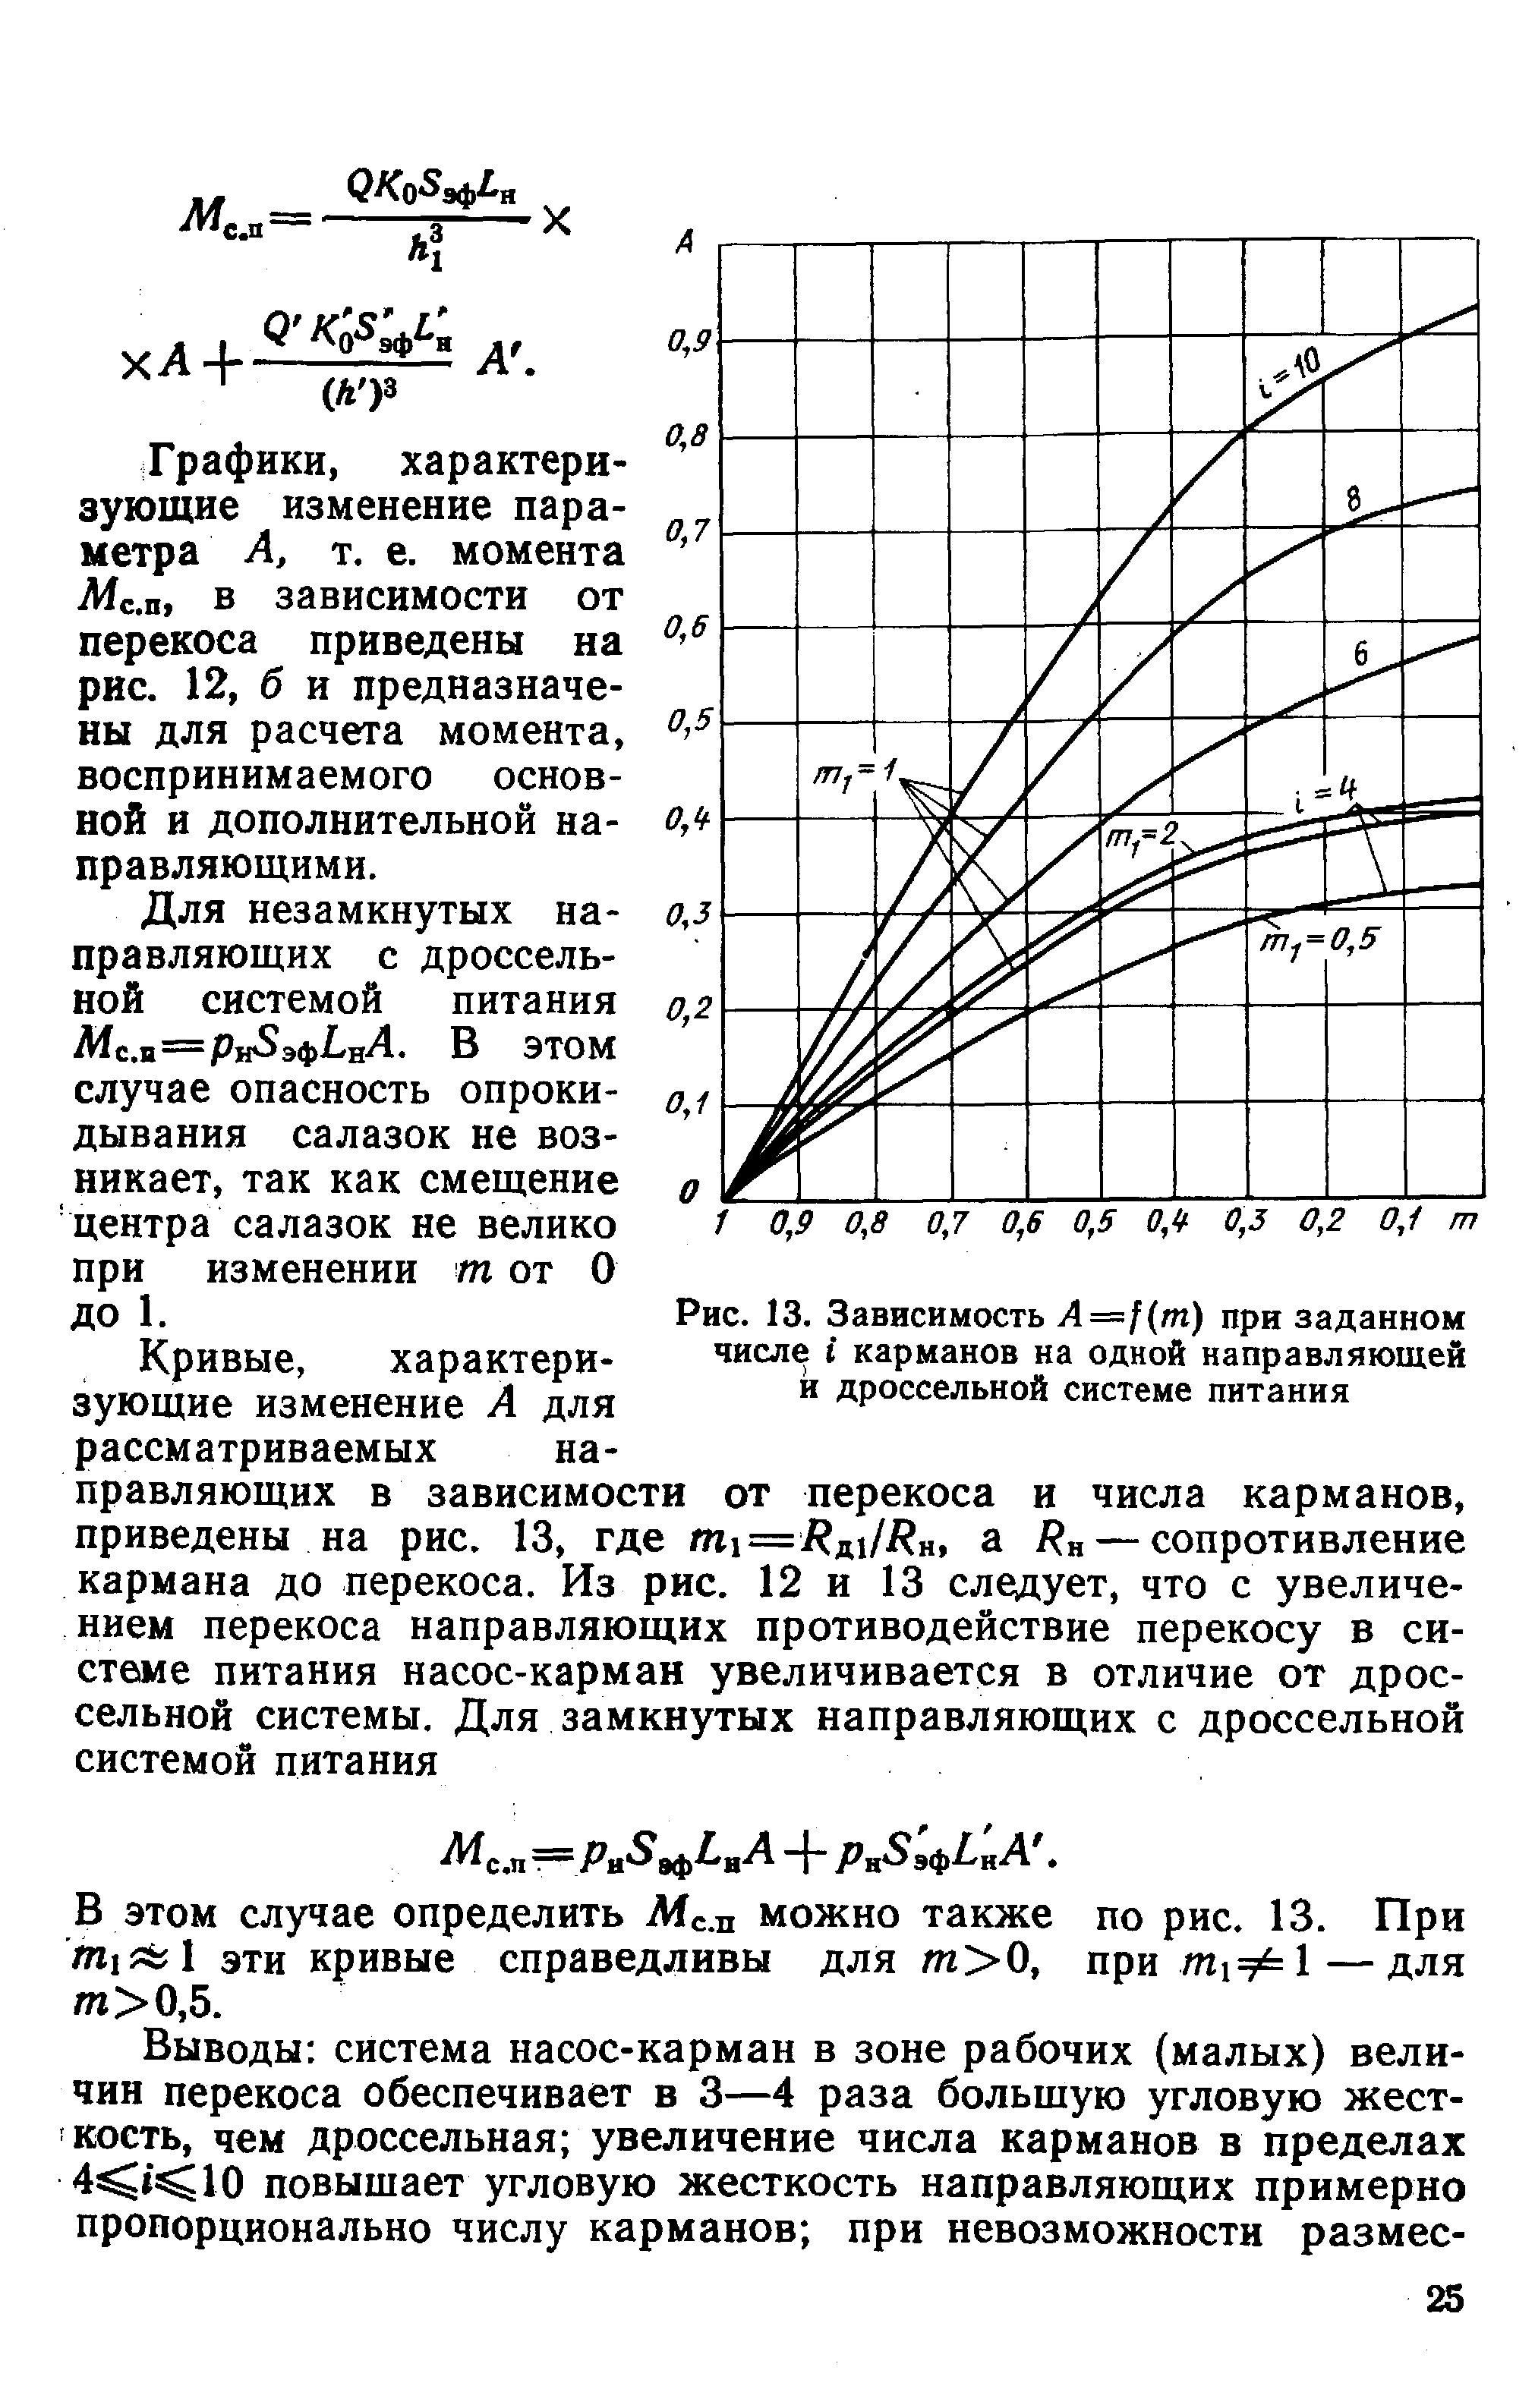 Рис. 13. Зависимость Л =/(т) при заданном числе карманов на одной направляющей и дроссельной системе питания
